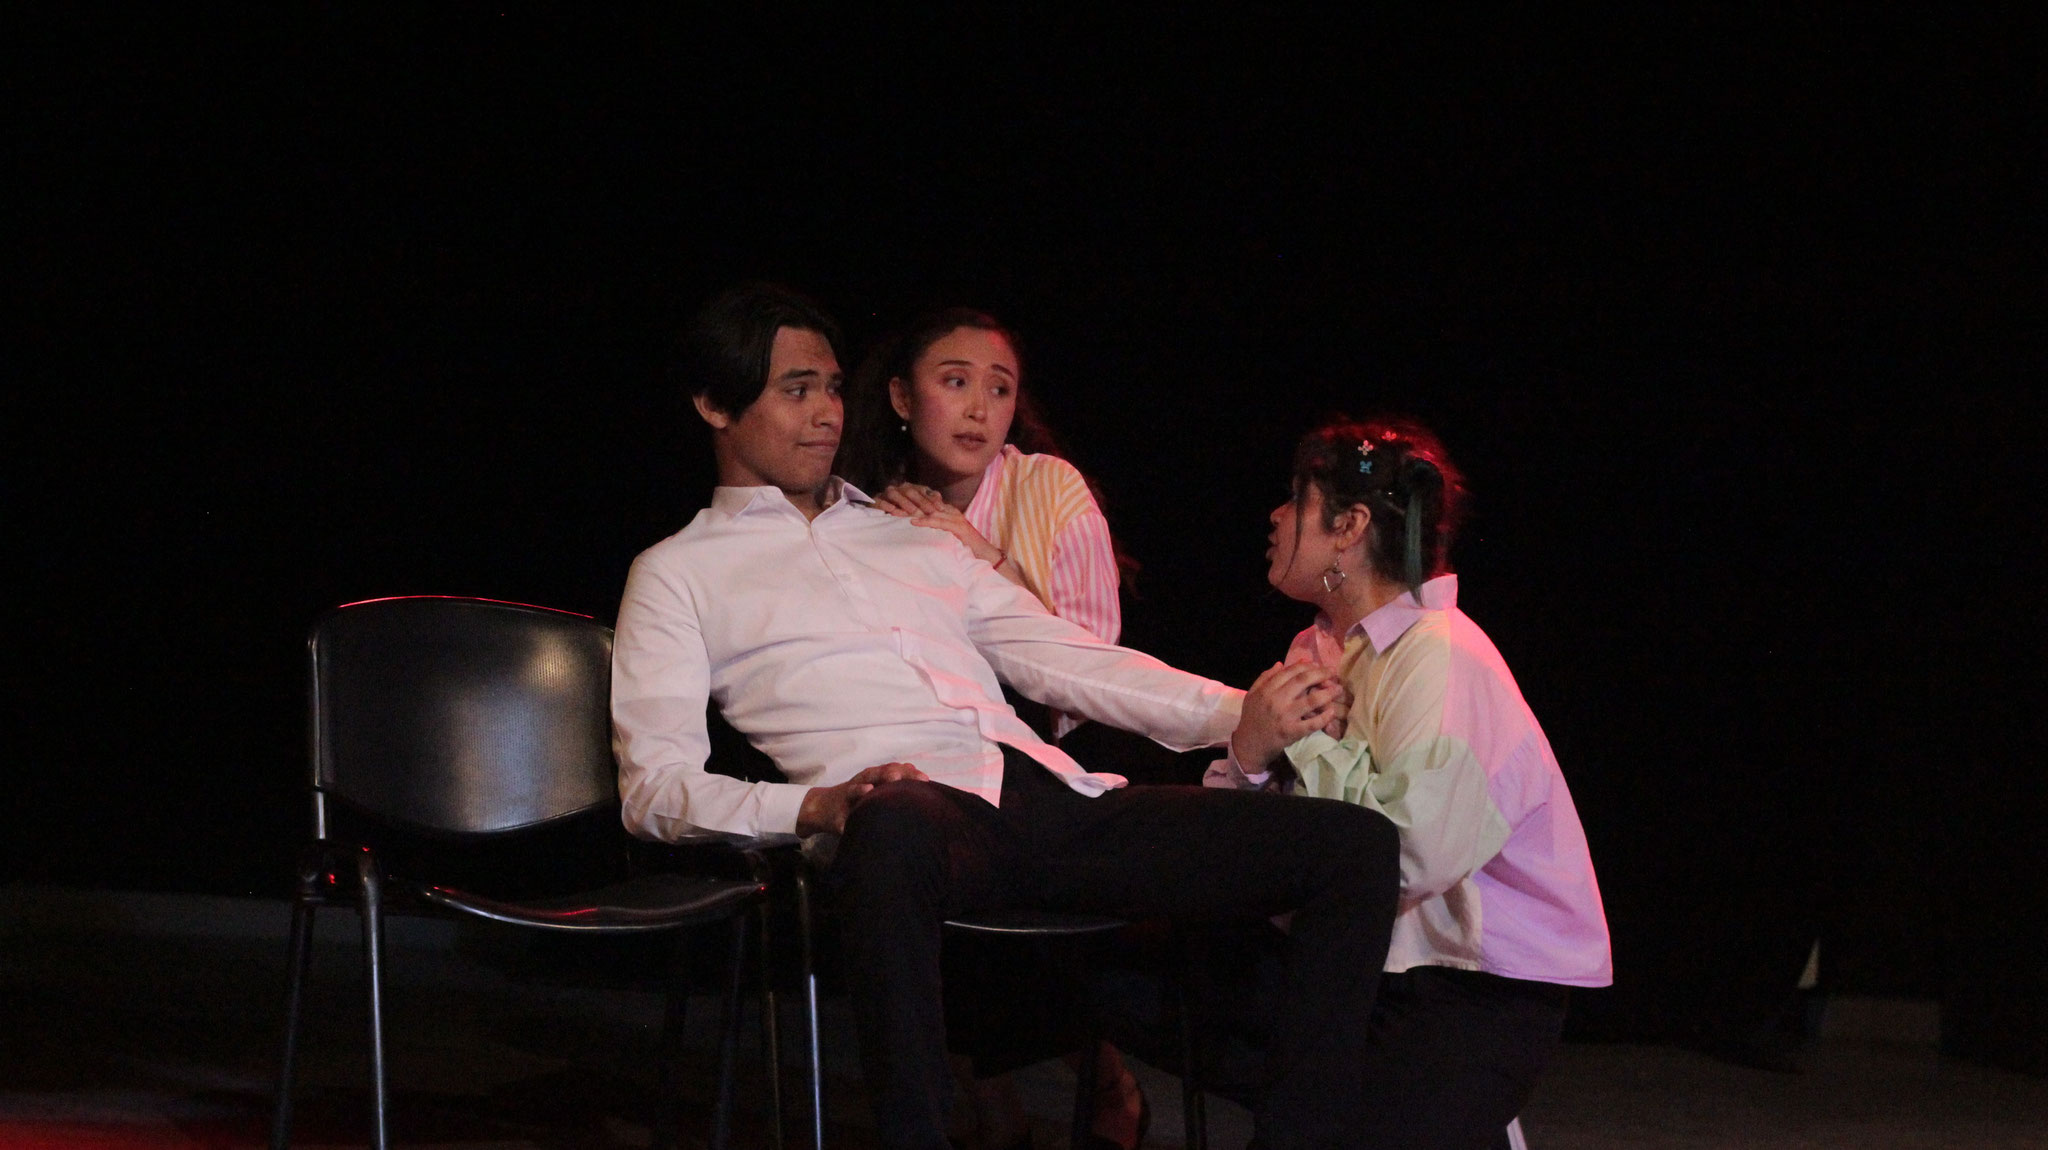 Obra "Fractales". Estudiantes de Profesional Medio en Arte Teatral bajo la coordinación de Rosa María Rojas